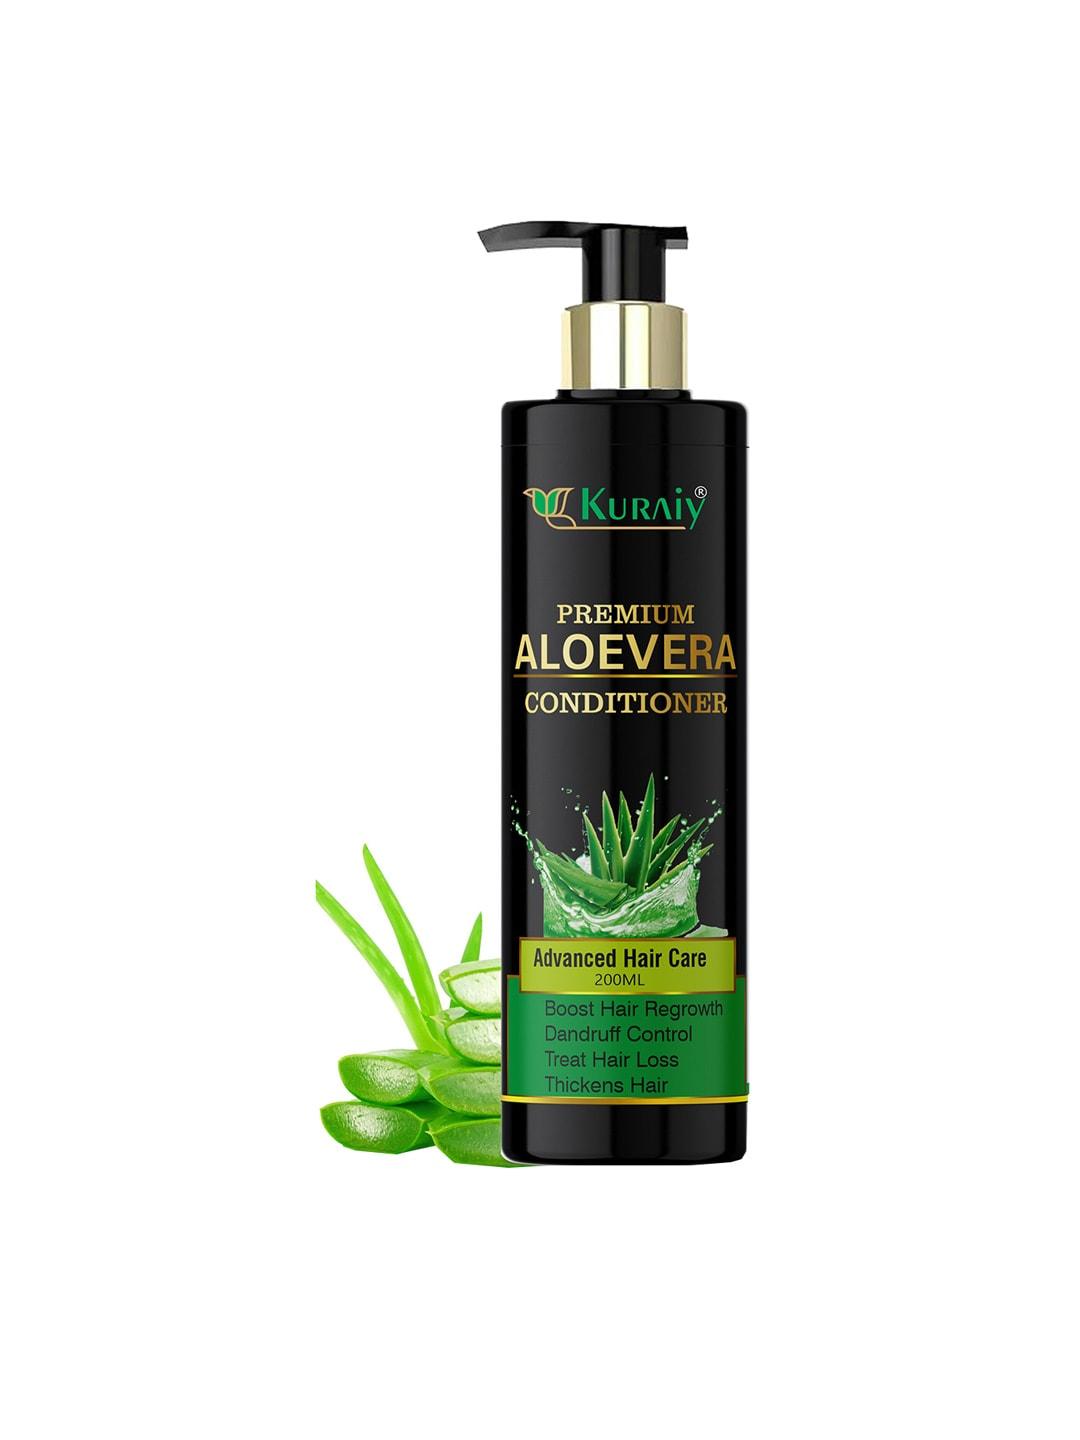 KURAIY Natural Aloevera Conditioner for Advanced Hair Care & Dandruff Control - 200ml